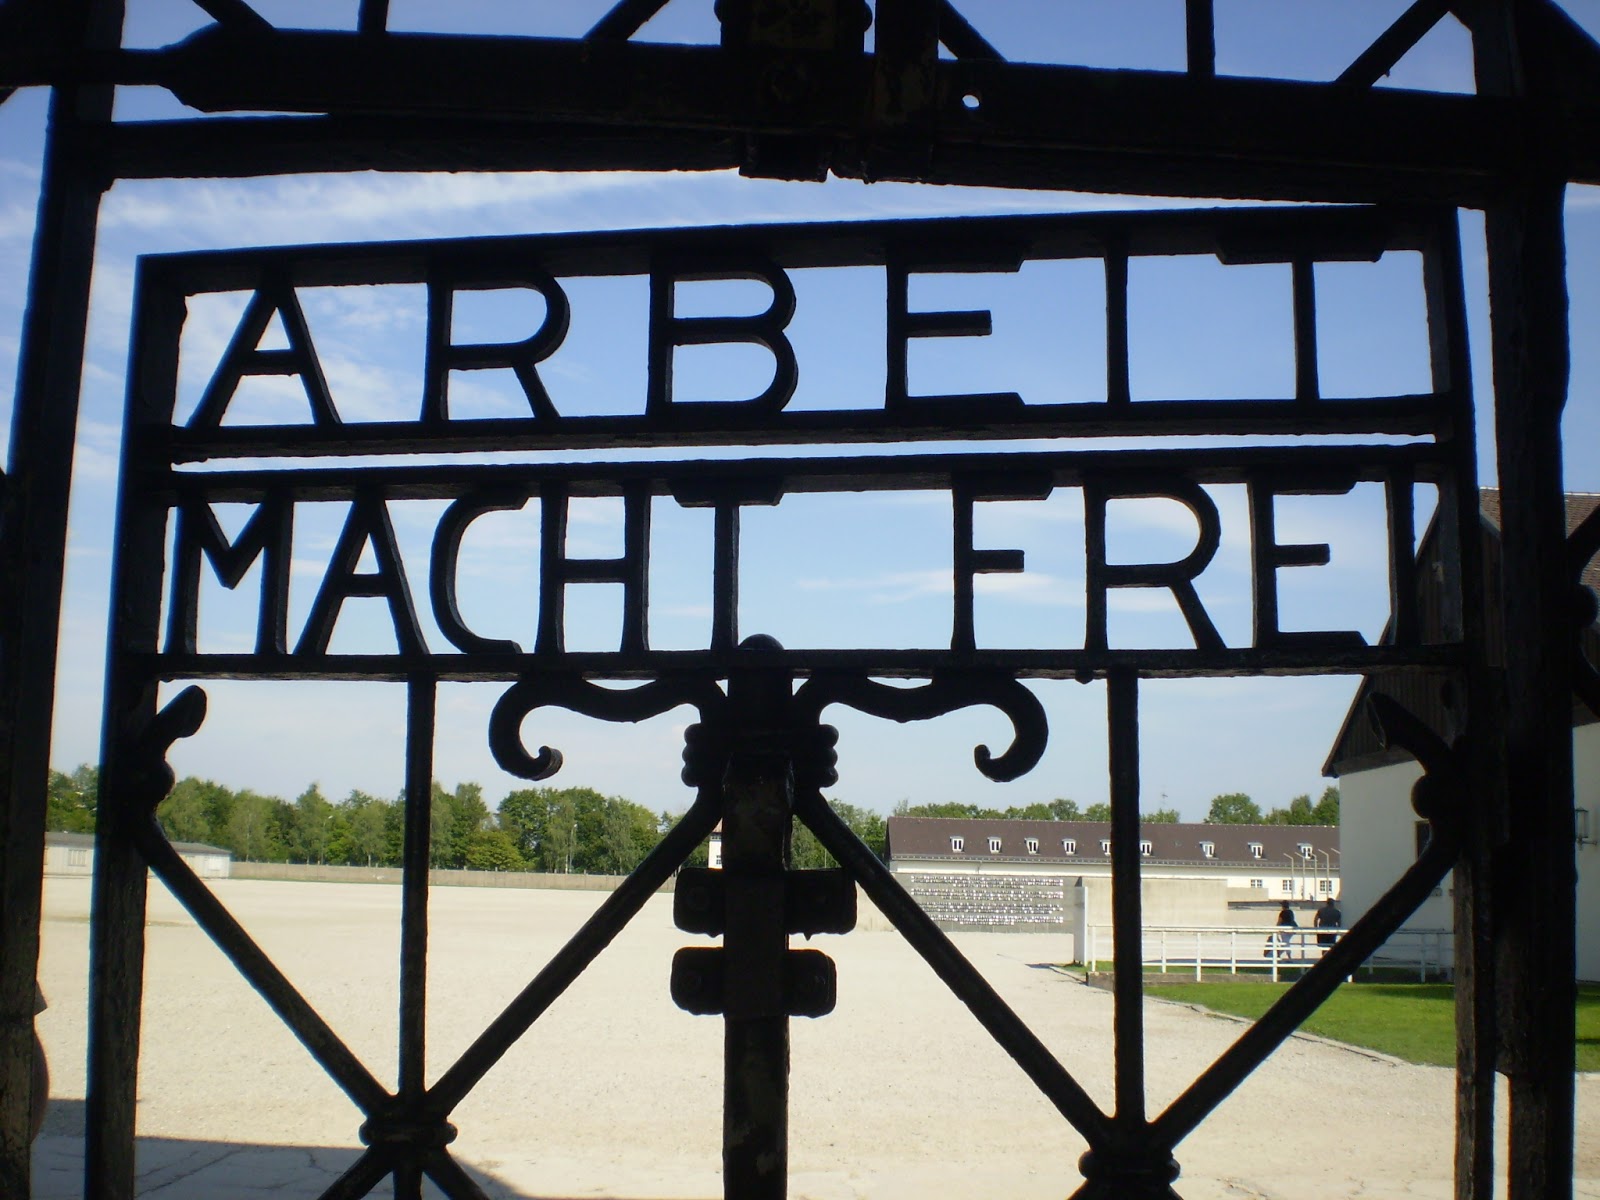 A bosszúállók: Dachau felszabadítása - Had- és rendvédelem-história, kicsit másképp